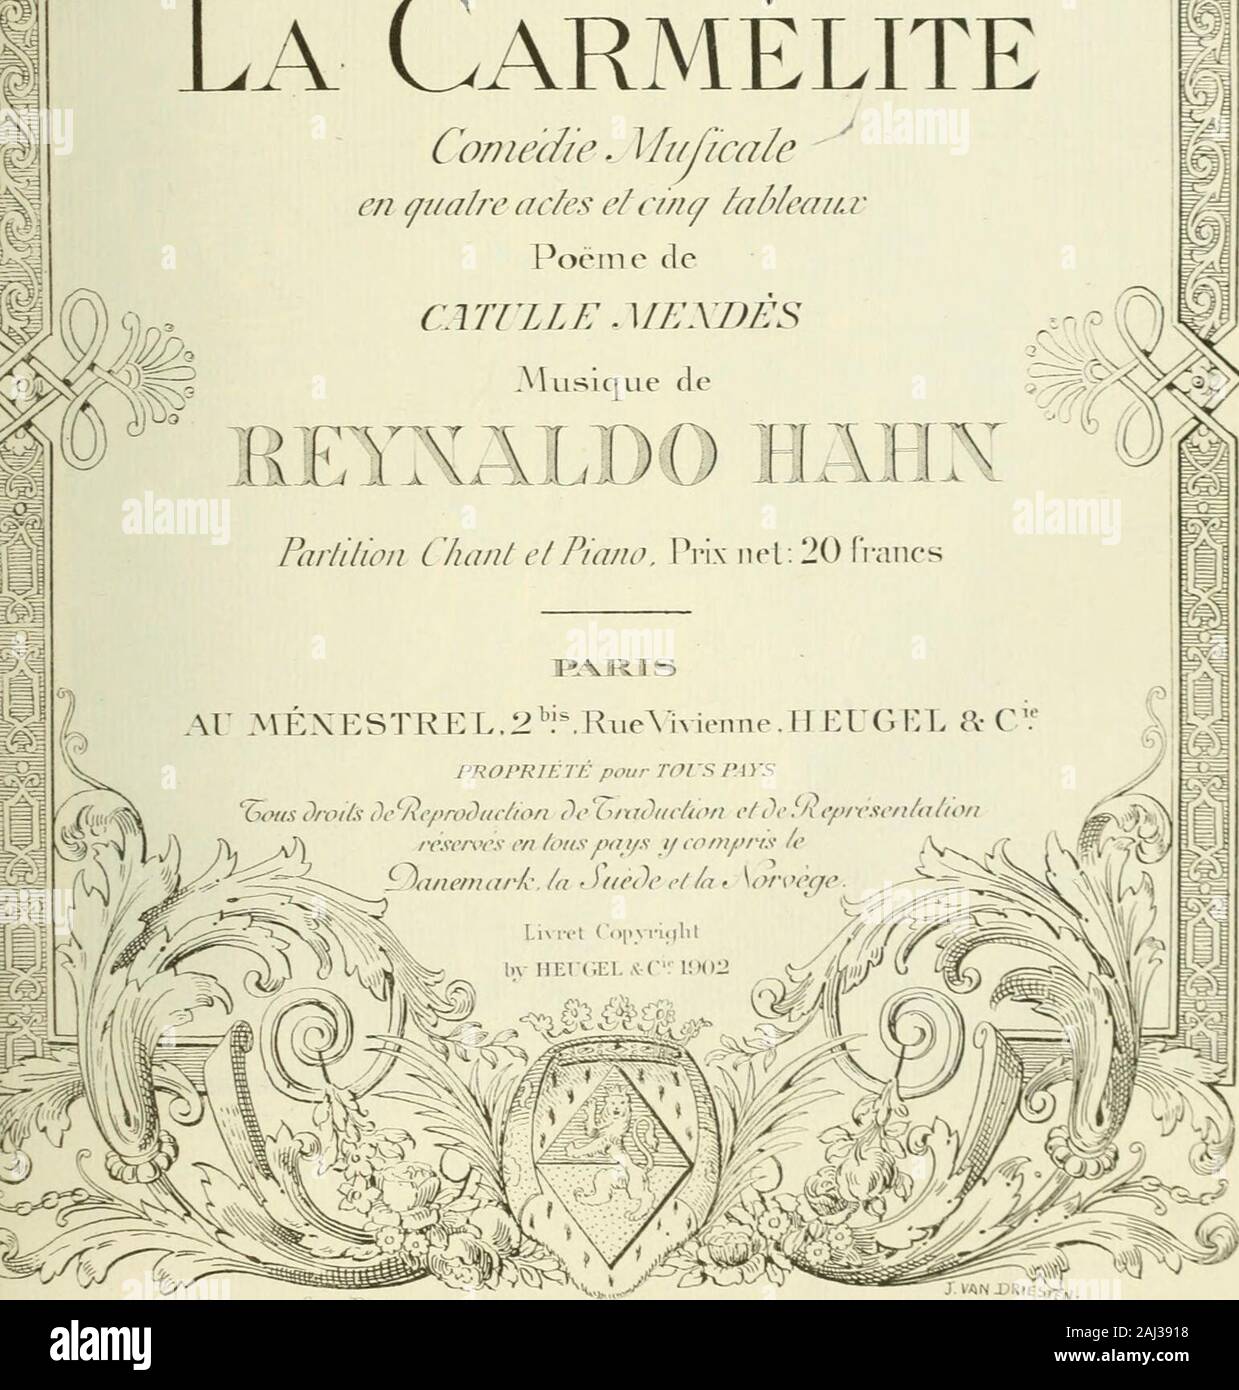 La carmÃ©lite; comÃ©die musicale en quatre actes et cinq tableaux PoÃ«me de Catulle MendÃ¨s . ¢Â«â¢ liii|.. l)&gt;liiiMhj. K? s; II.-IIIS, Kl 0 r. f)nuin, f)r. ^II^I^Itli^A sj&gt;im.-^ i , I L.U 1 J ISJ9 M Hahn, Reynaldo 1503 ^La carmÃ©lite. Piano-vocal H155C3 score. French,La carmÃ©lite Musk PLEASE DO NOT REMOVECARDS OR SLIPS FROM THIS POCKET UNIVERSITY OF TORONTO LIBRARY. TiS^A.-f^ty. ^r^iAV. J^./^iP. 1505Hl55Cb fÃ ^KA NOV13 1958  Stock Photo